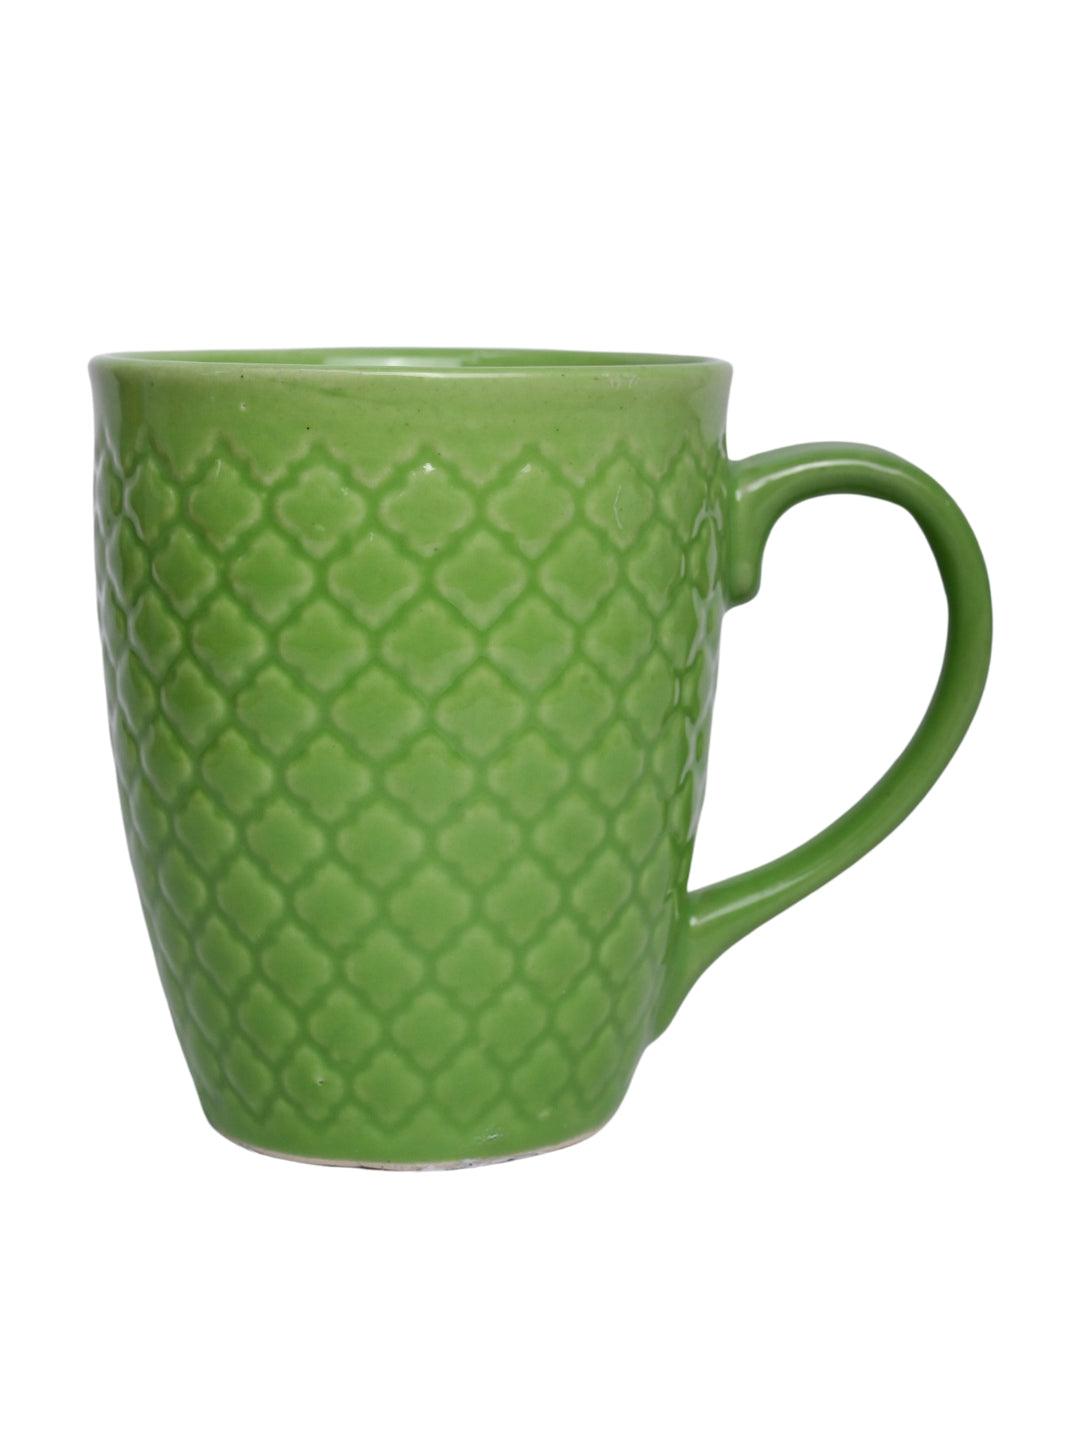 VON CASA Ceramic Coffee Mug - 320 Ml, Green - MARKET 99